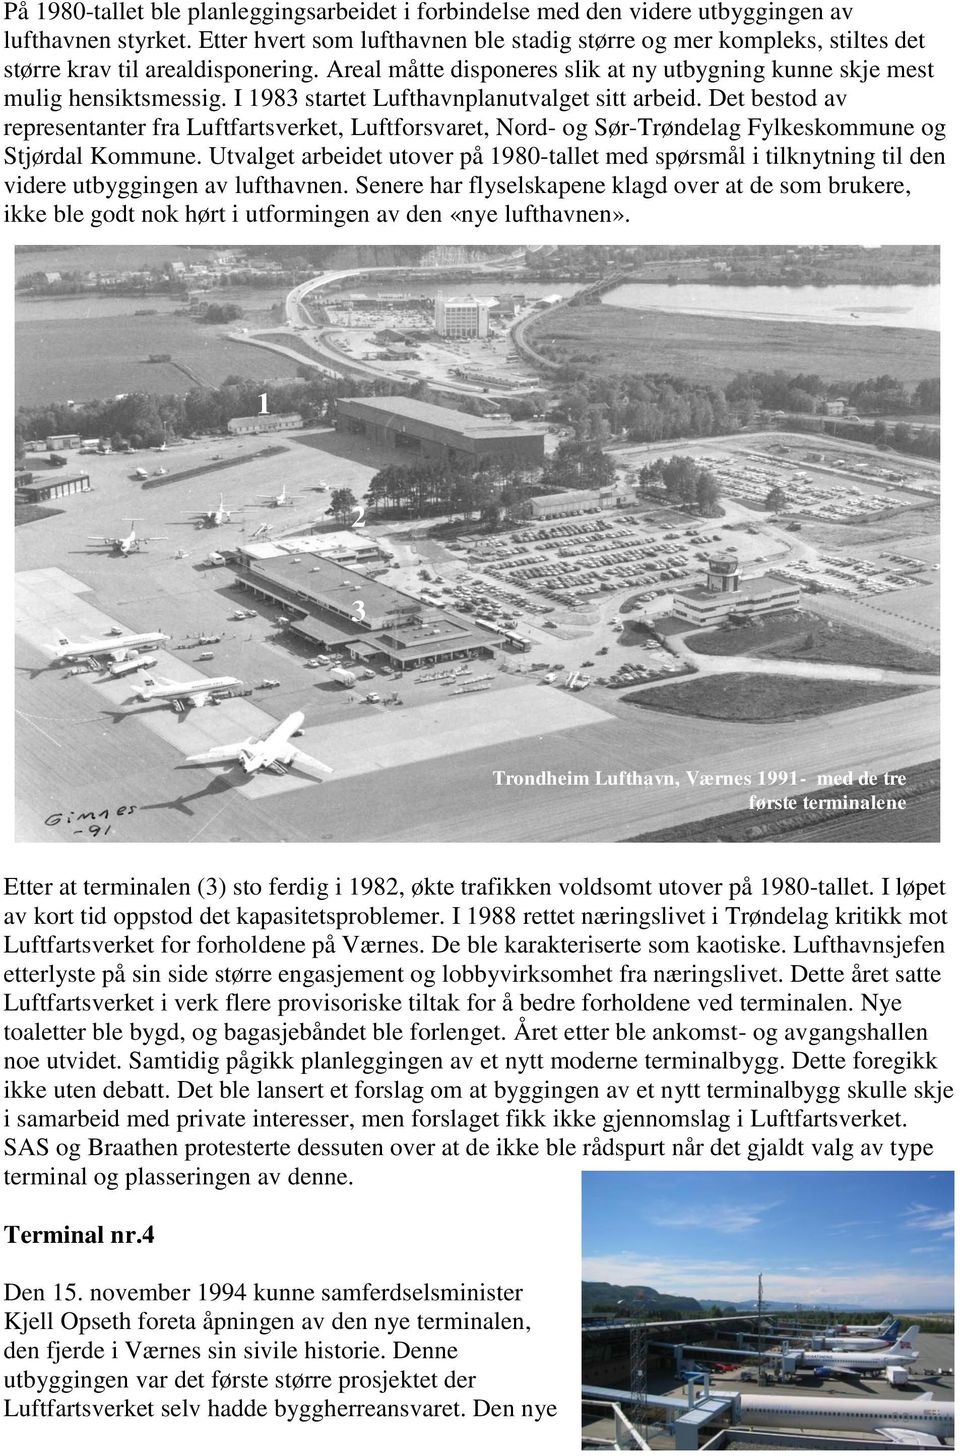 I 1983 startet Lufthavnplanutvalget sitt arbeid. Det bestod av representanter fra Luftfartsverket, Luftforsvaret, Nord- og Sør-Trøndelag Fylkeskommune og Stjørdal Kommune.